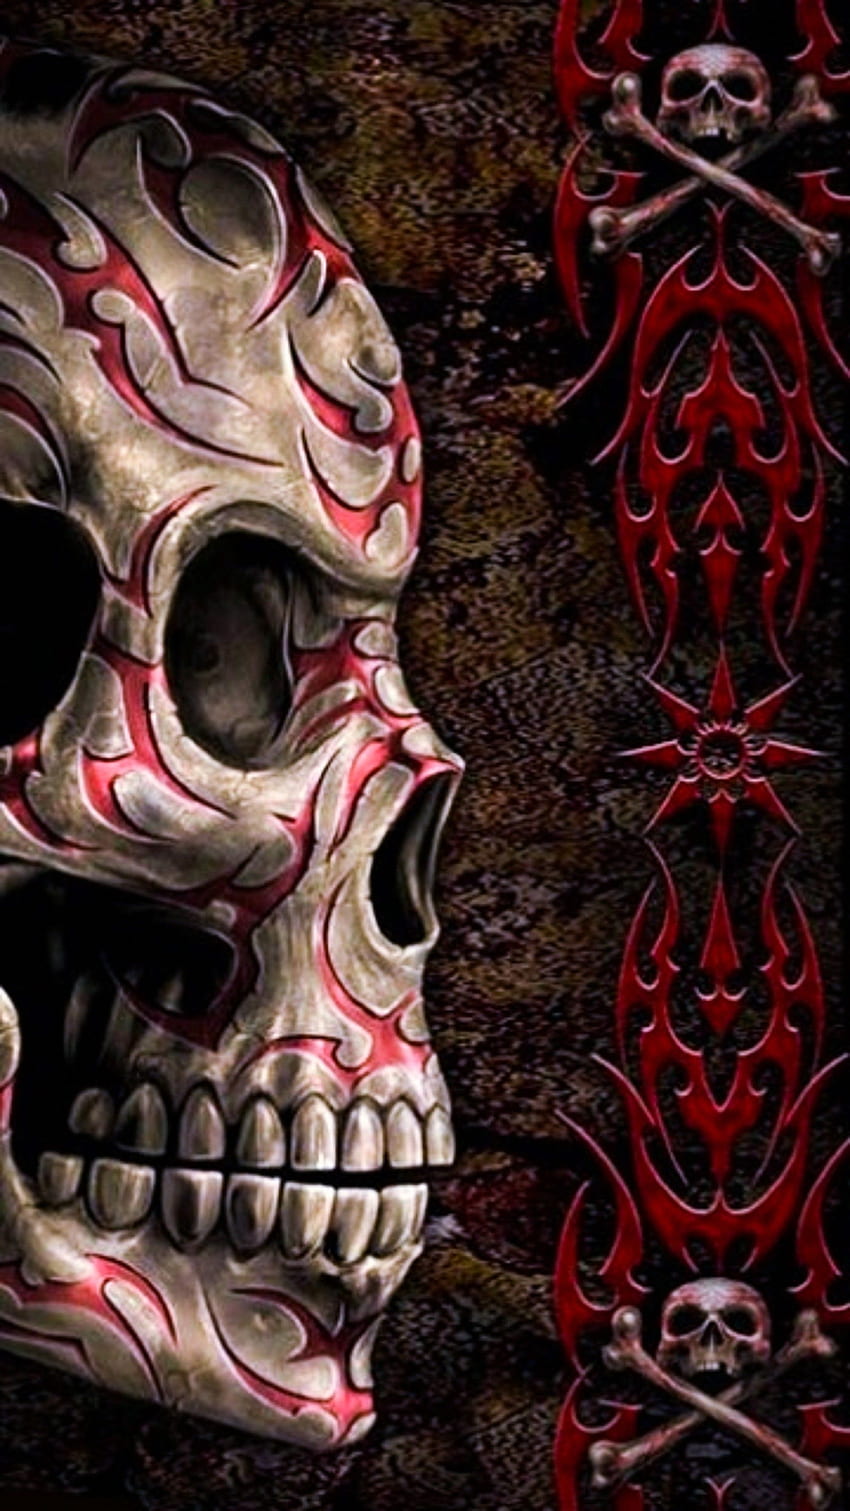 Skull tattoo HD wallpapers | Pxfuel